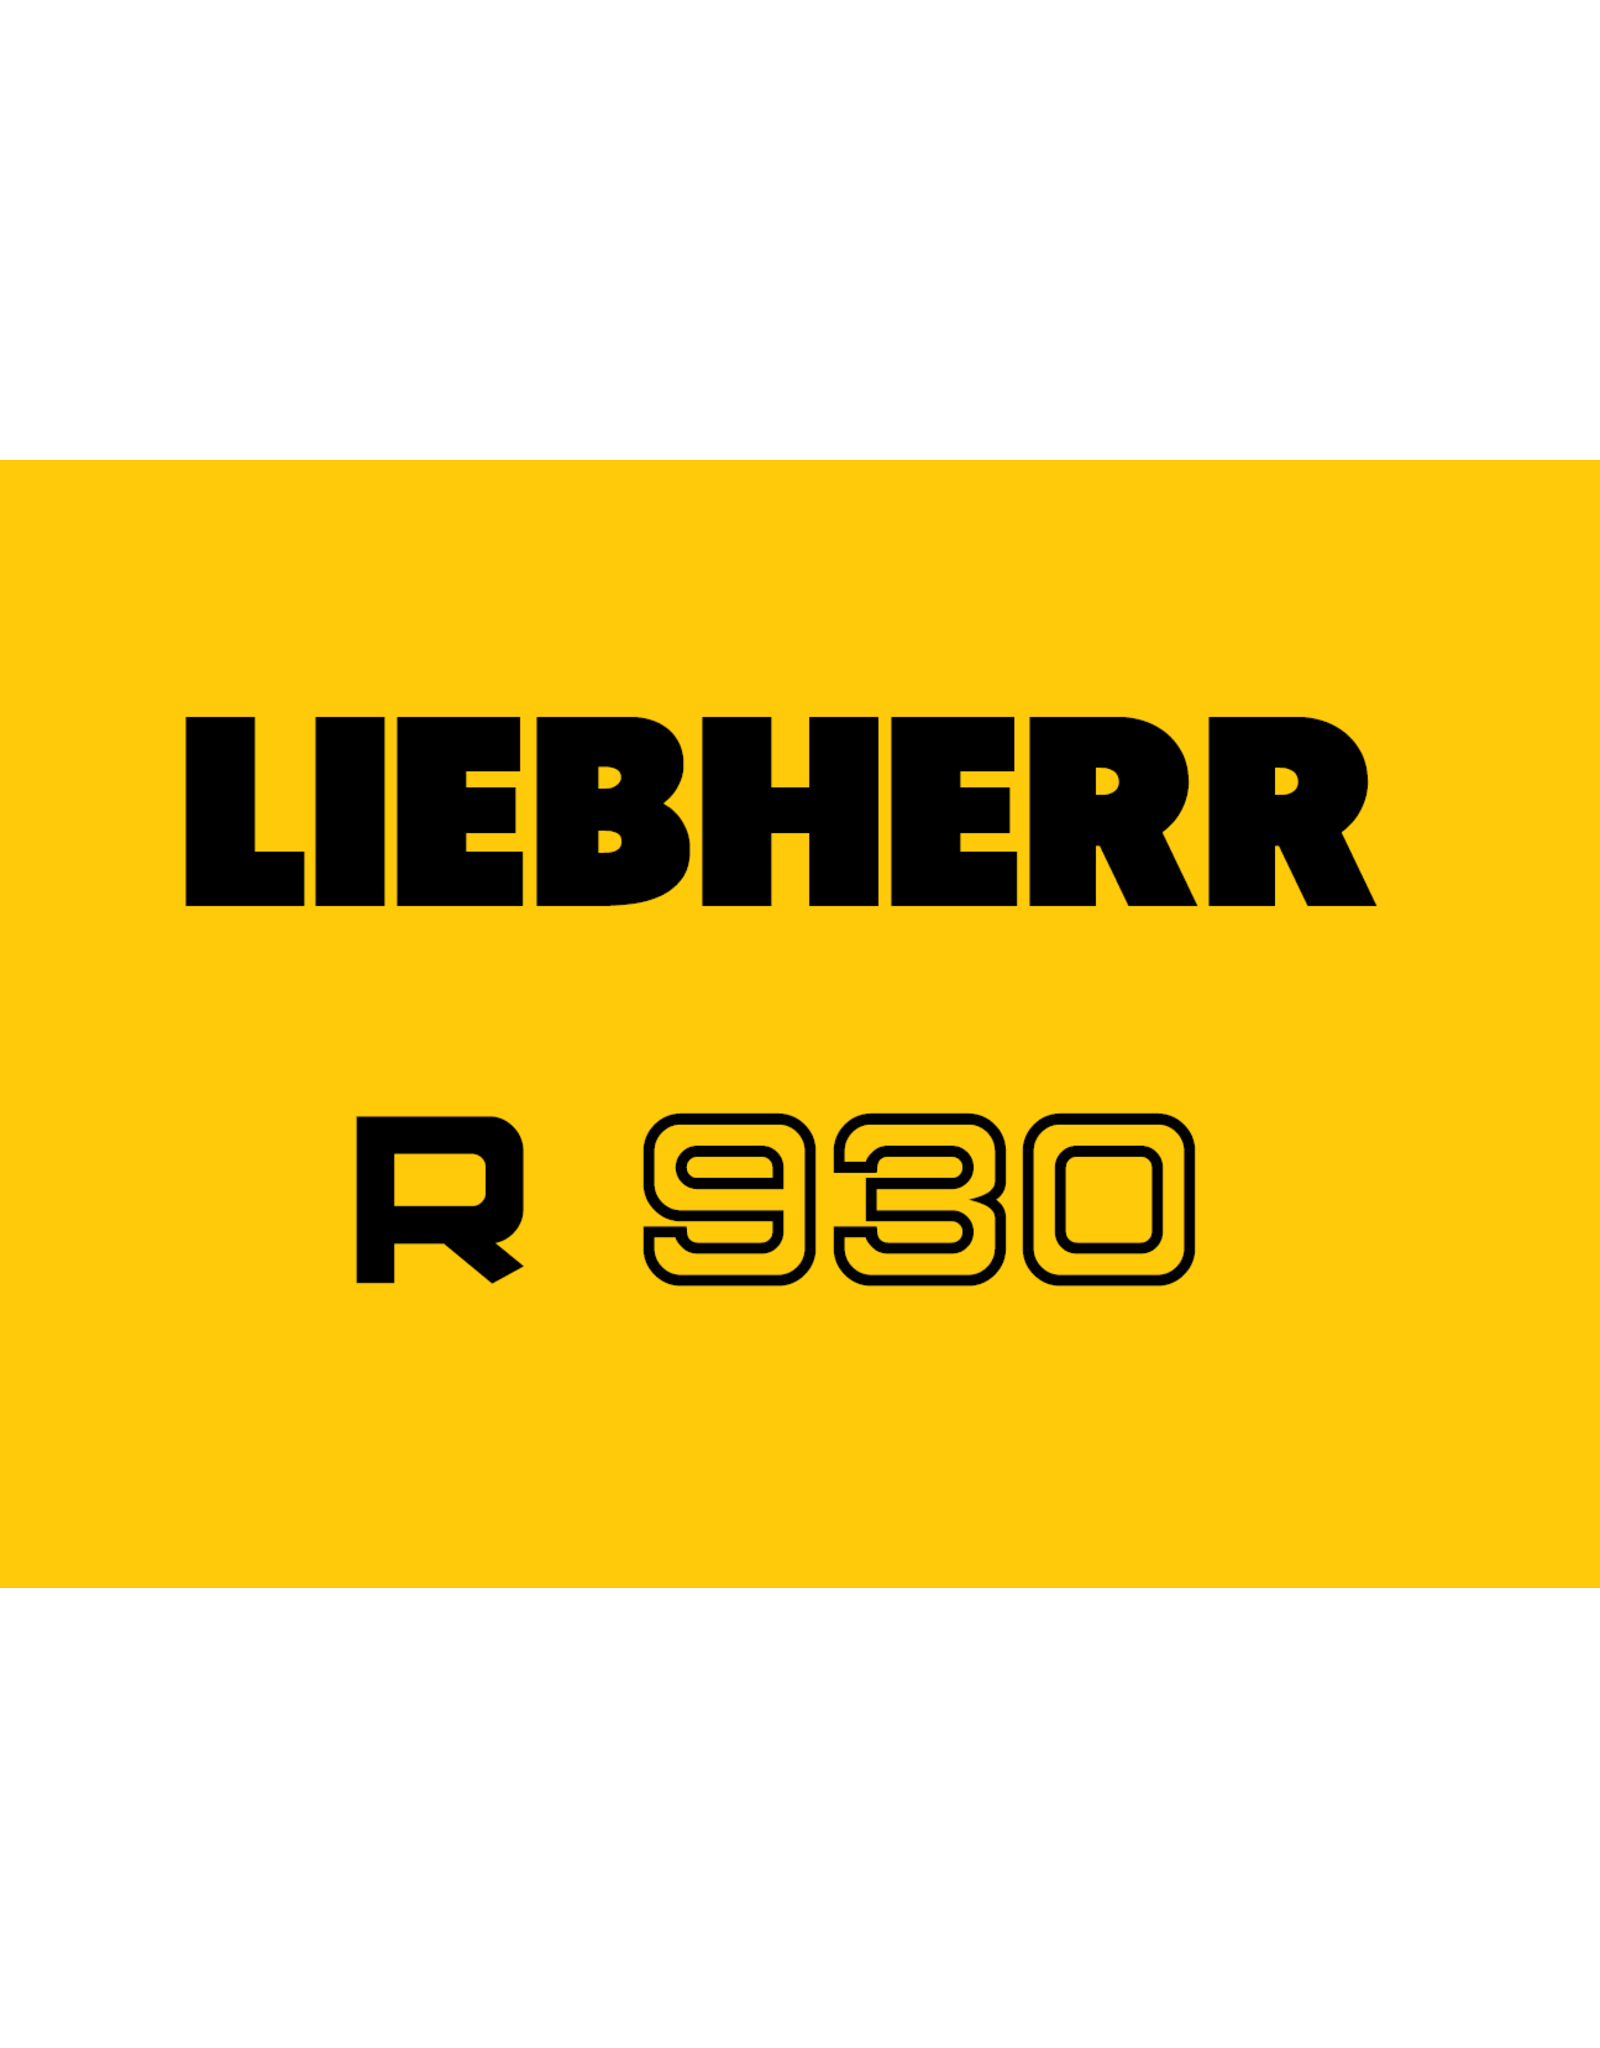 Echle Hartstahl GmbH Racleur de chaîne d'excavatrice Liebherr R930